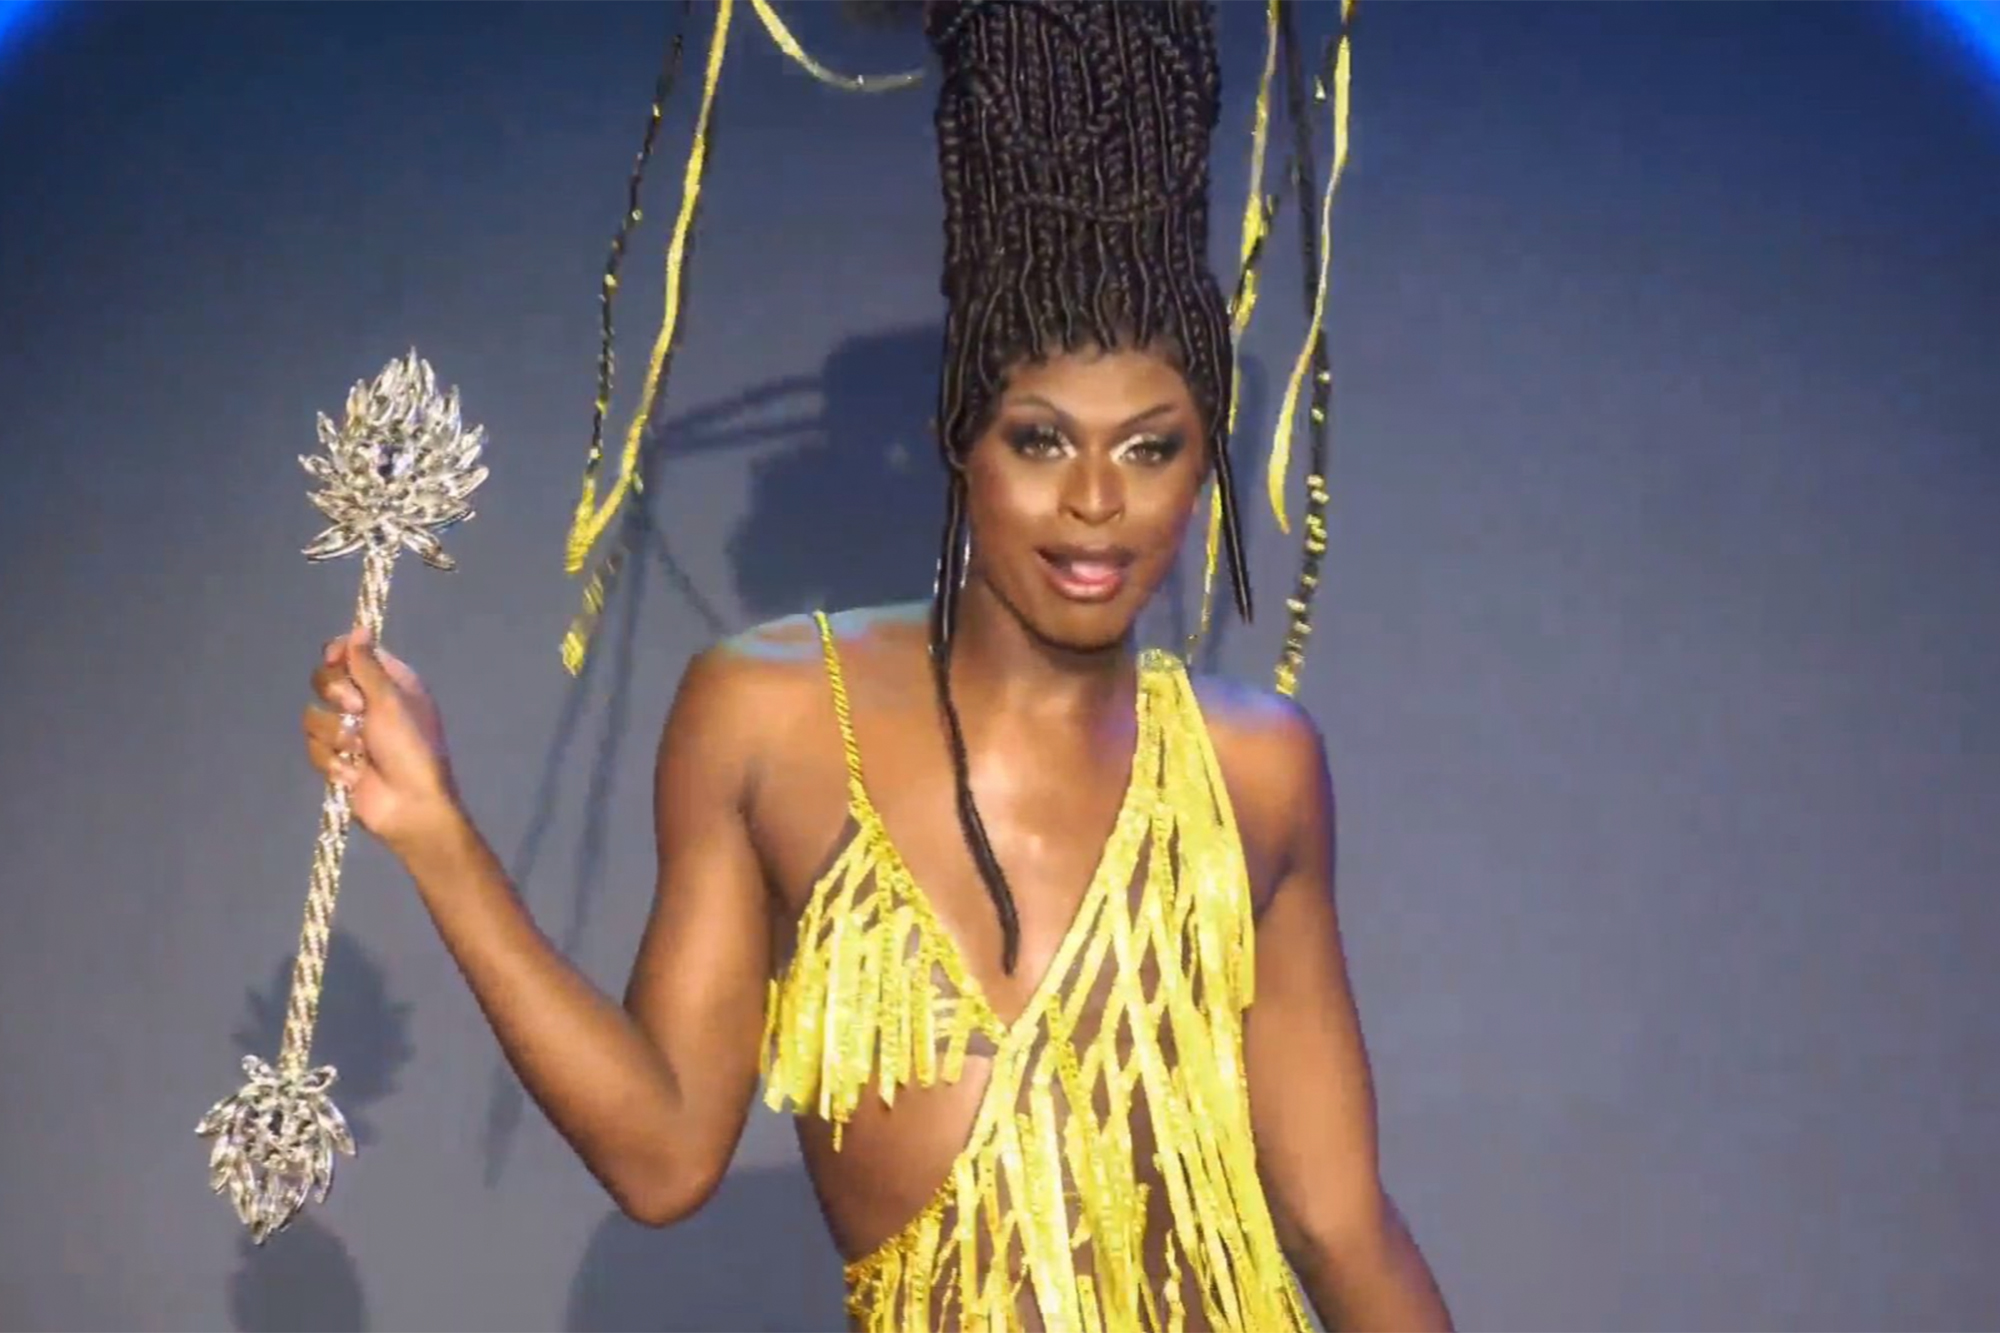 Cena da 13ª temporada do reality show RuPaul’s Drag Race. Nela, vemos Symone, drag negra, magra e de peruca preta com adornos de confete dourados, andando com um cetro prateado. Seu vestido segue o mesmo padrão amarelo dos confetes do cabelo